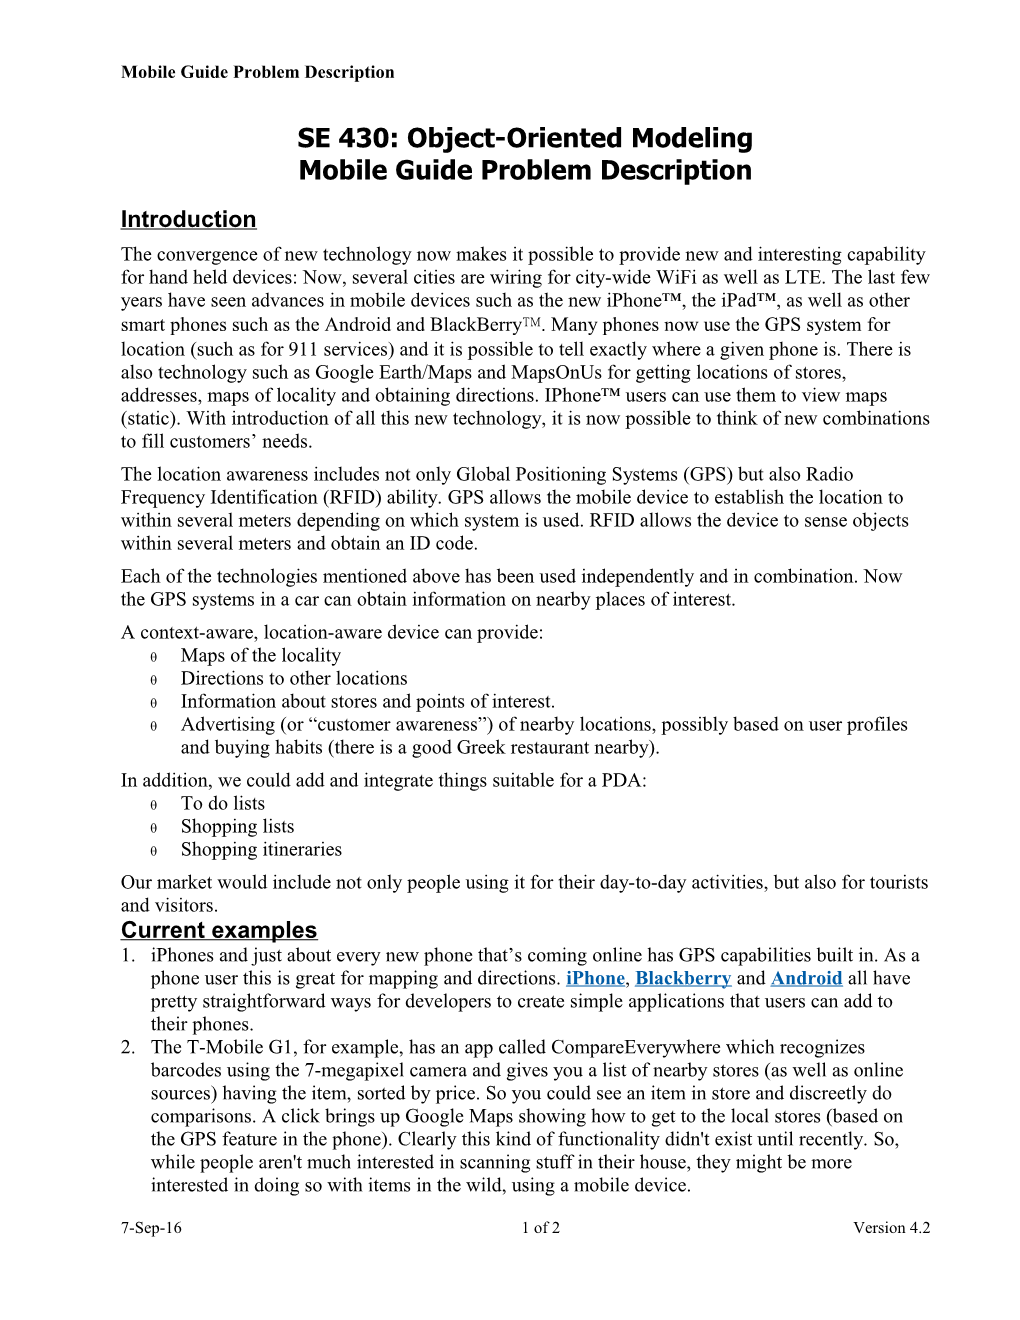 Mobile Guide Project Description